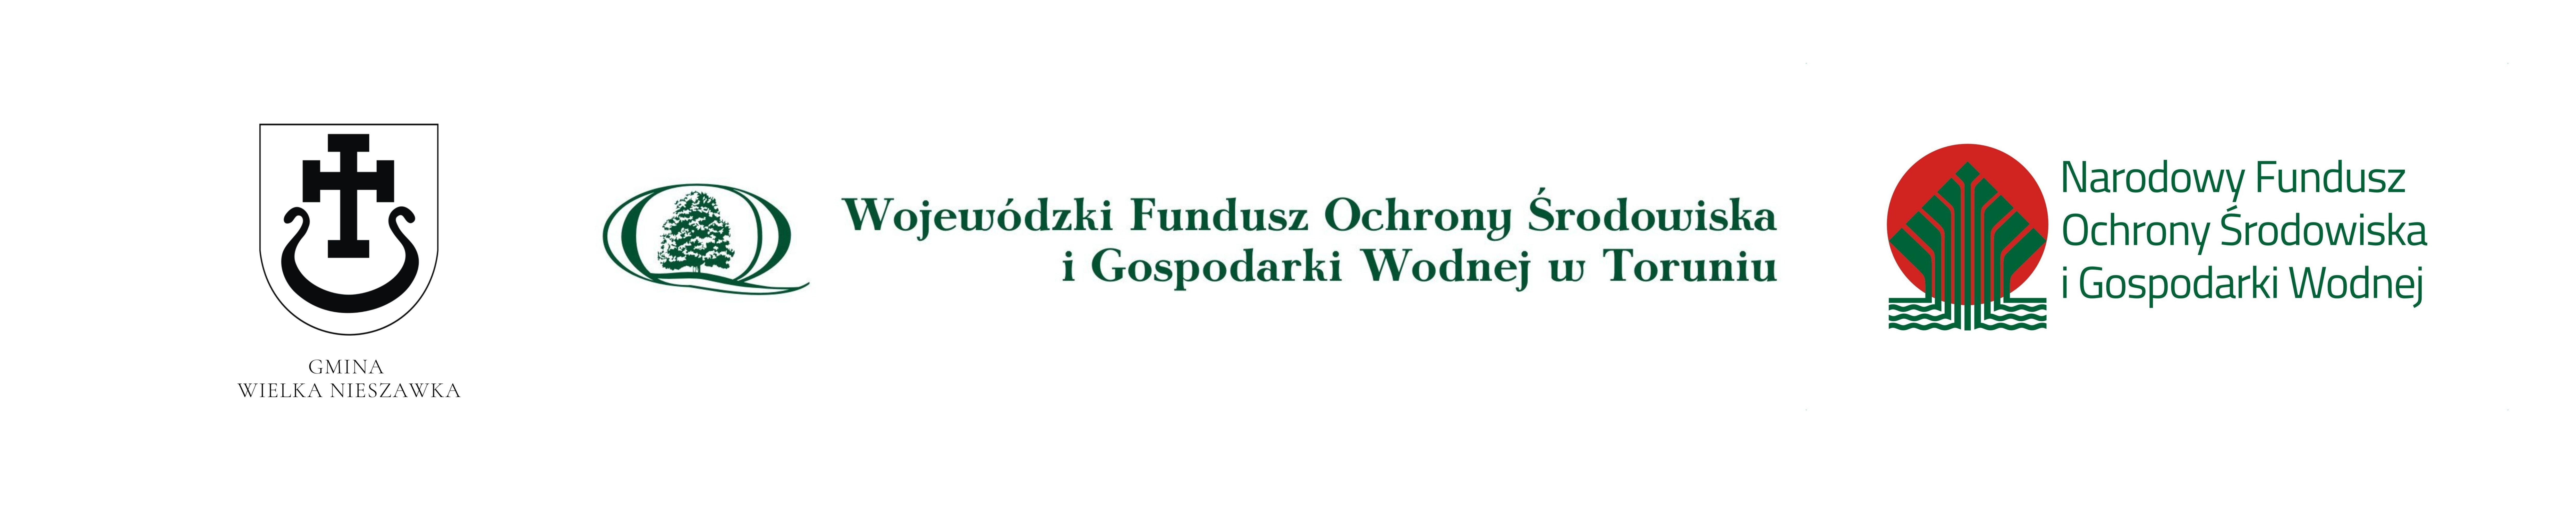 Logo Wojewódzkiego Funduszu Ochrony Środowiska i Gospodarki Wodnej w Toruniu, Narodowy Fundusz Ochrony Środowiska  i Gospodarki Wodnej, Herb Gminy Wielka Nieszawka 